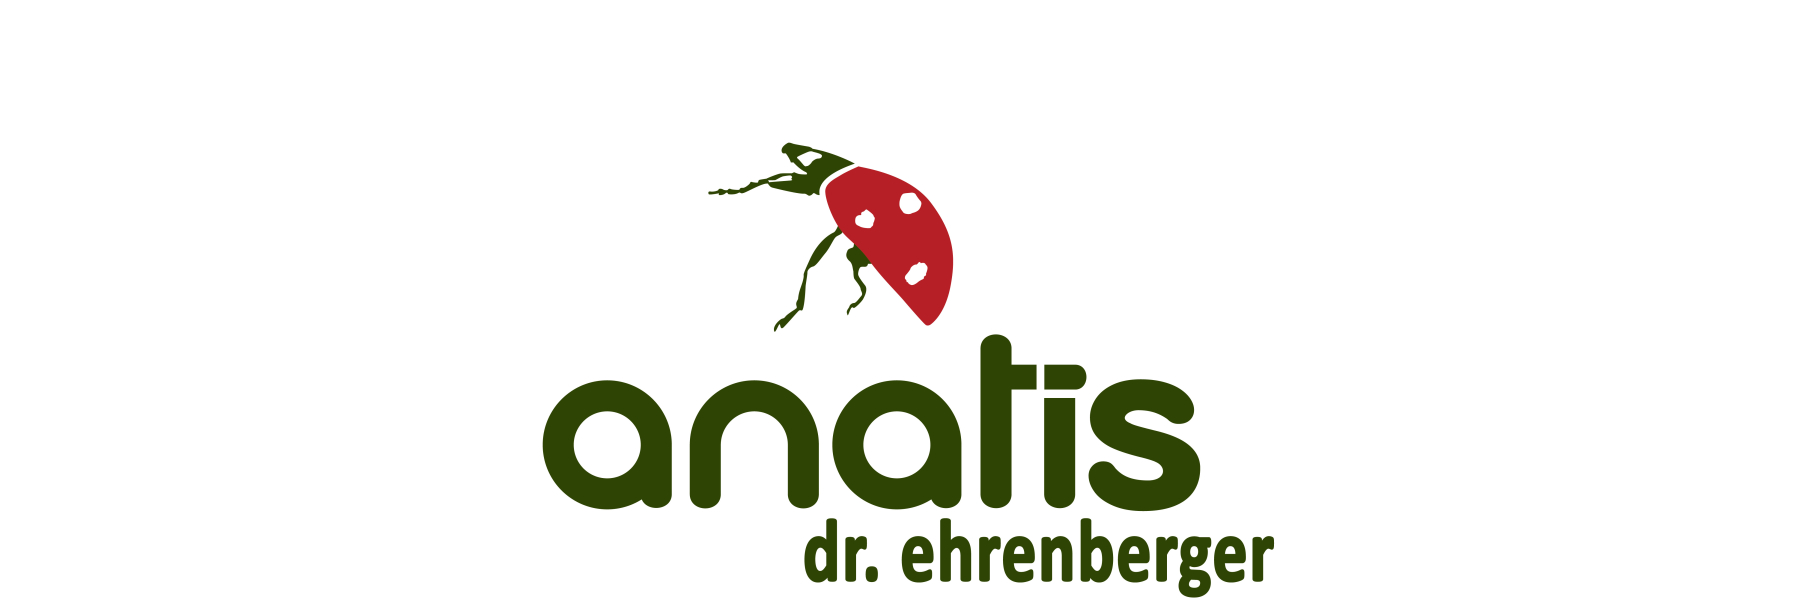 anatis ist ein Österreichischer Hersteller von...